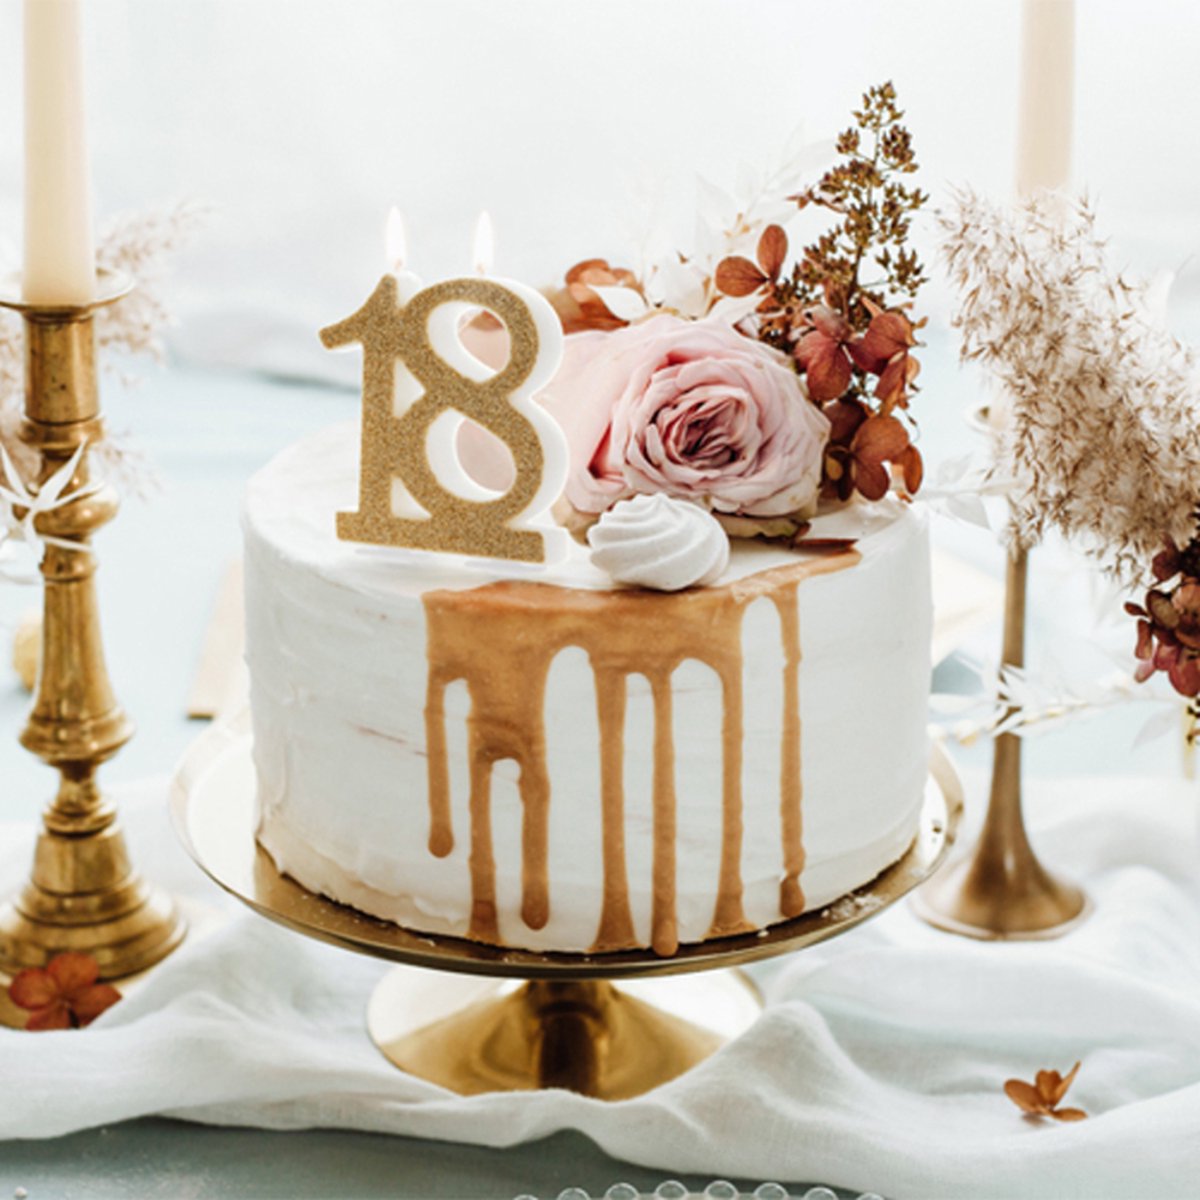 Bougie à gâteau 18 ans pour fêter sa majorité ou ses années de mariage –  Miss Popcake